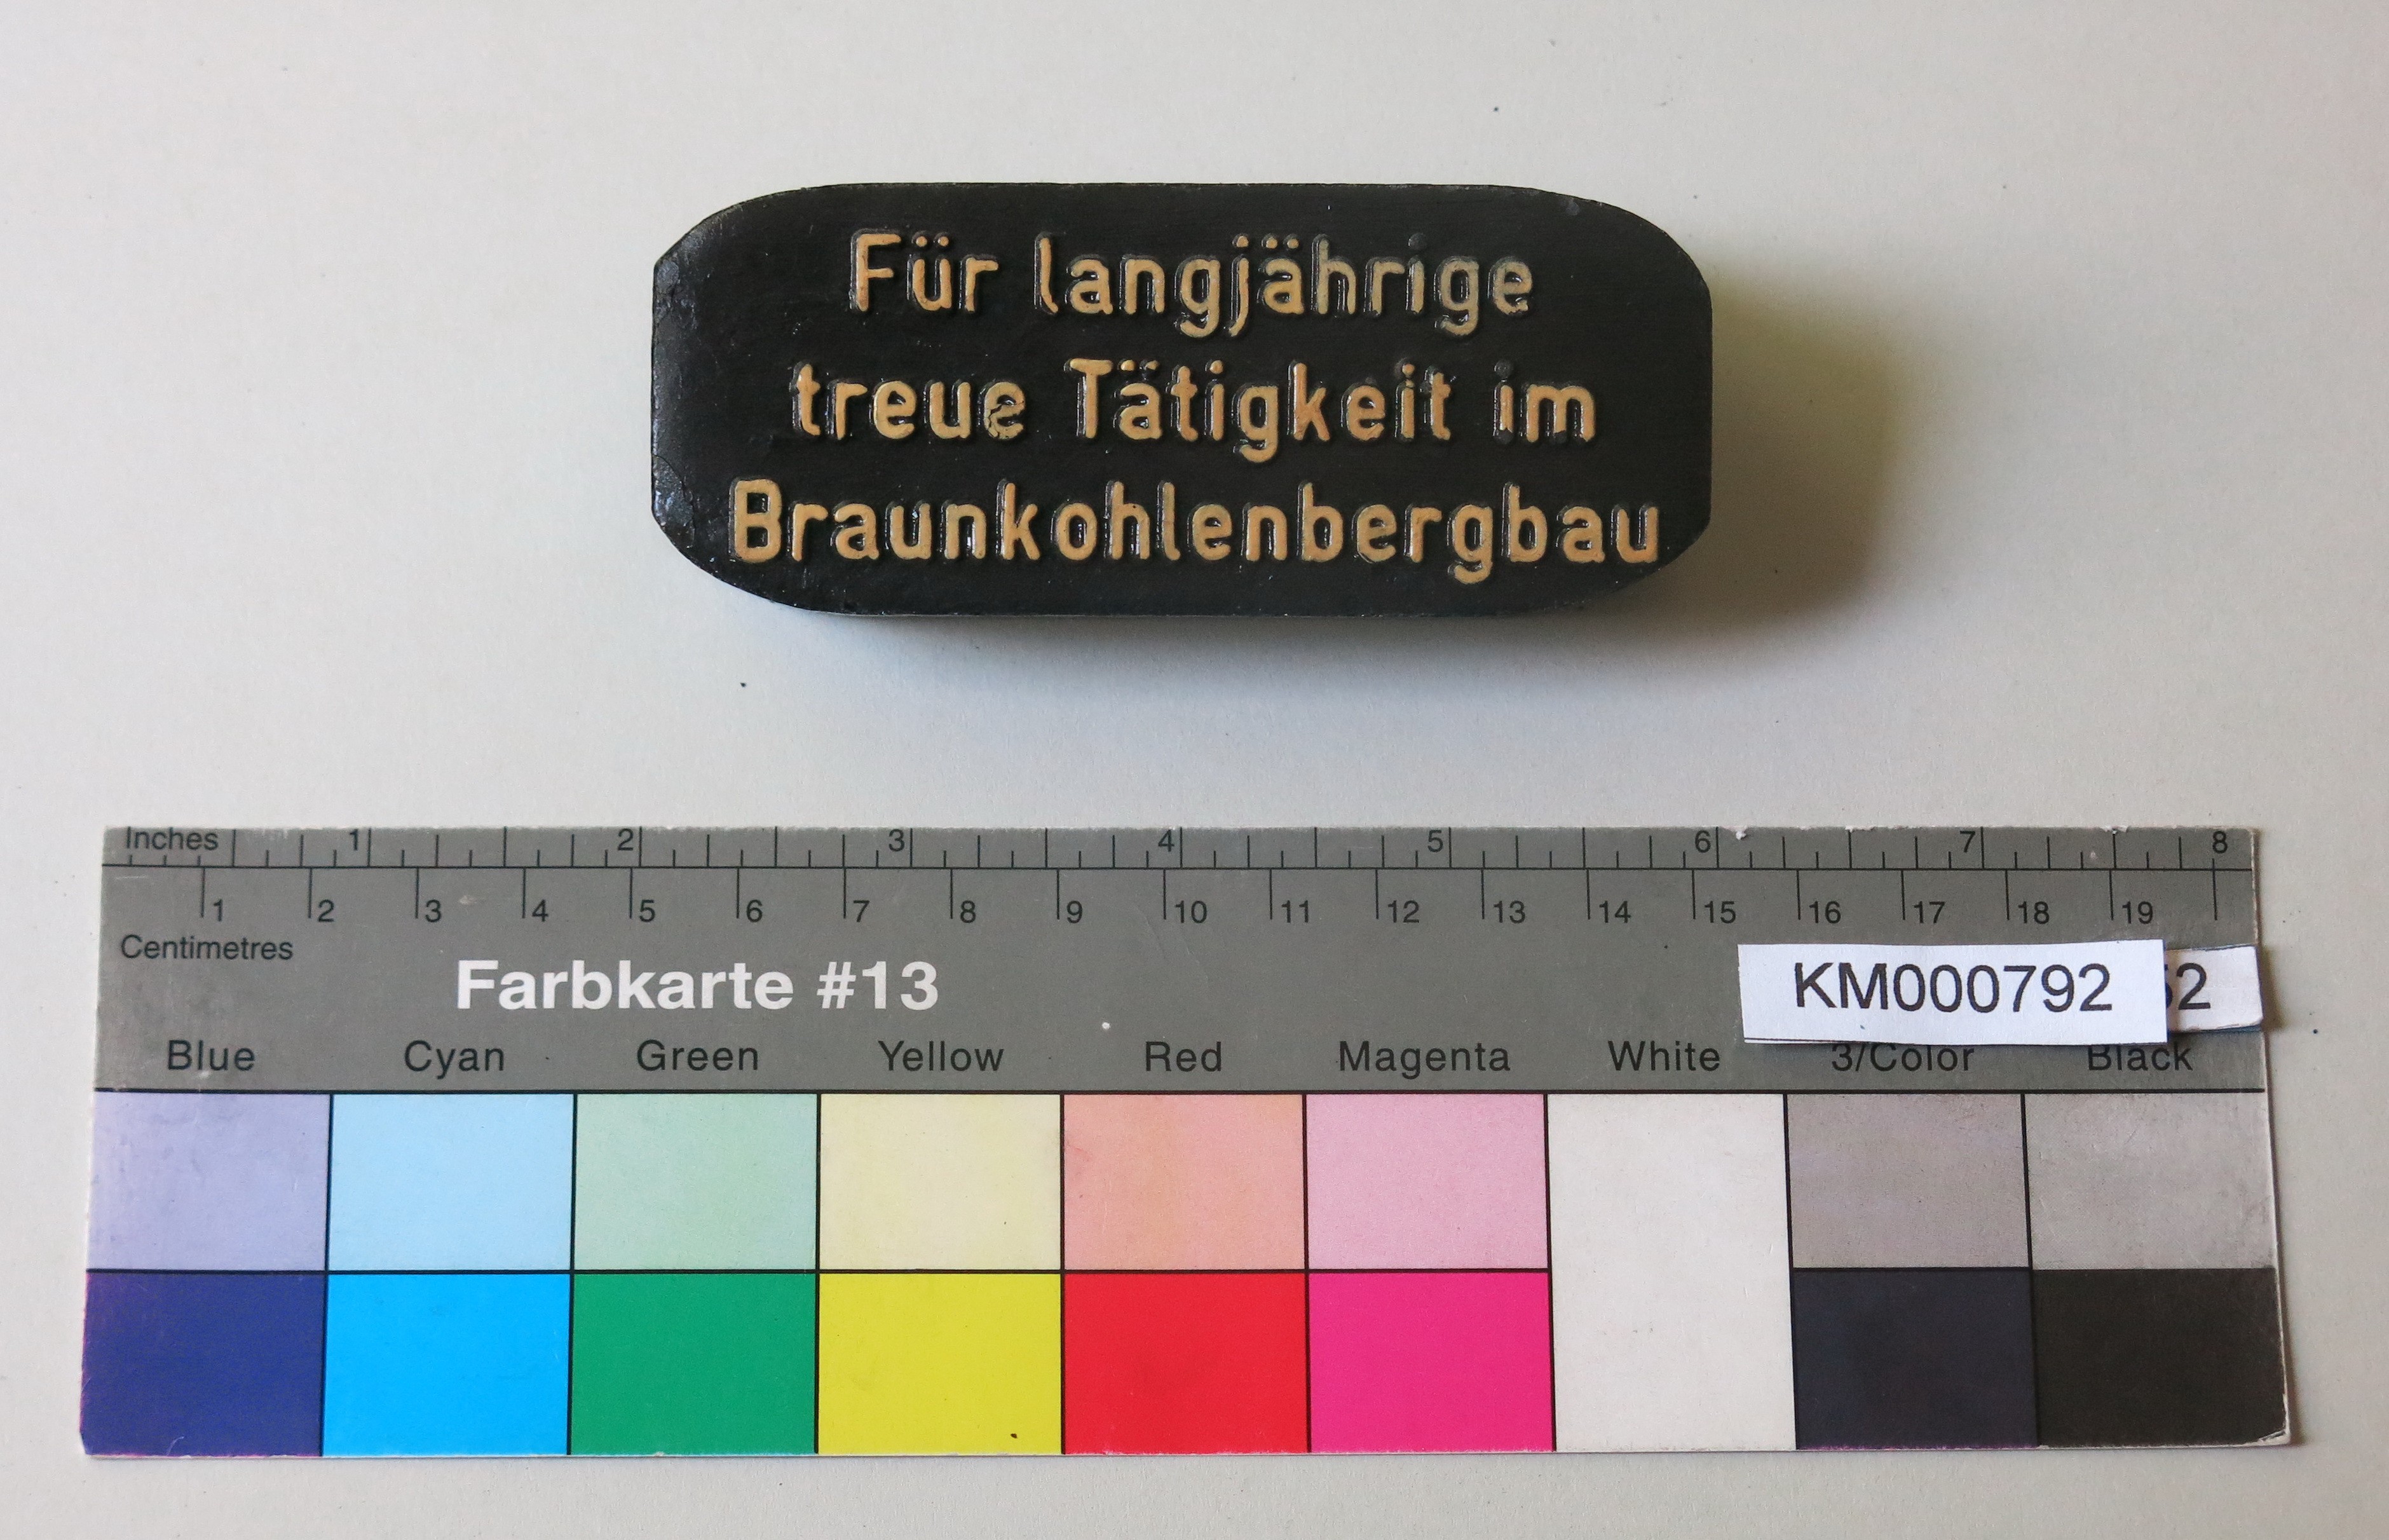 Zierbrikett "Für langjährige treue Tätigkeit im Braunkohlenbergbau" (Energiefabrik Knappenrode CC BY-SA)